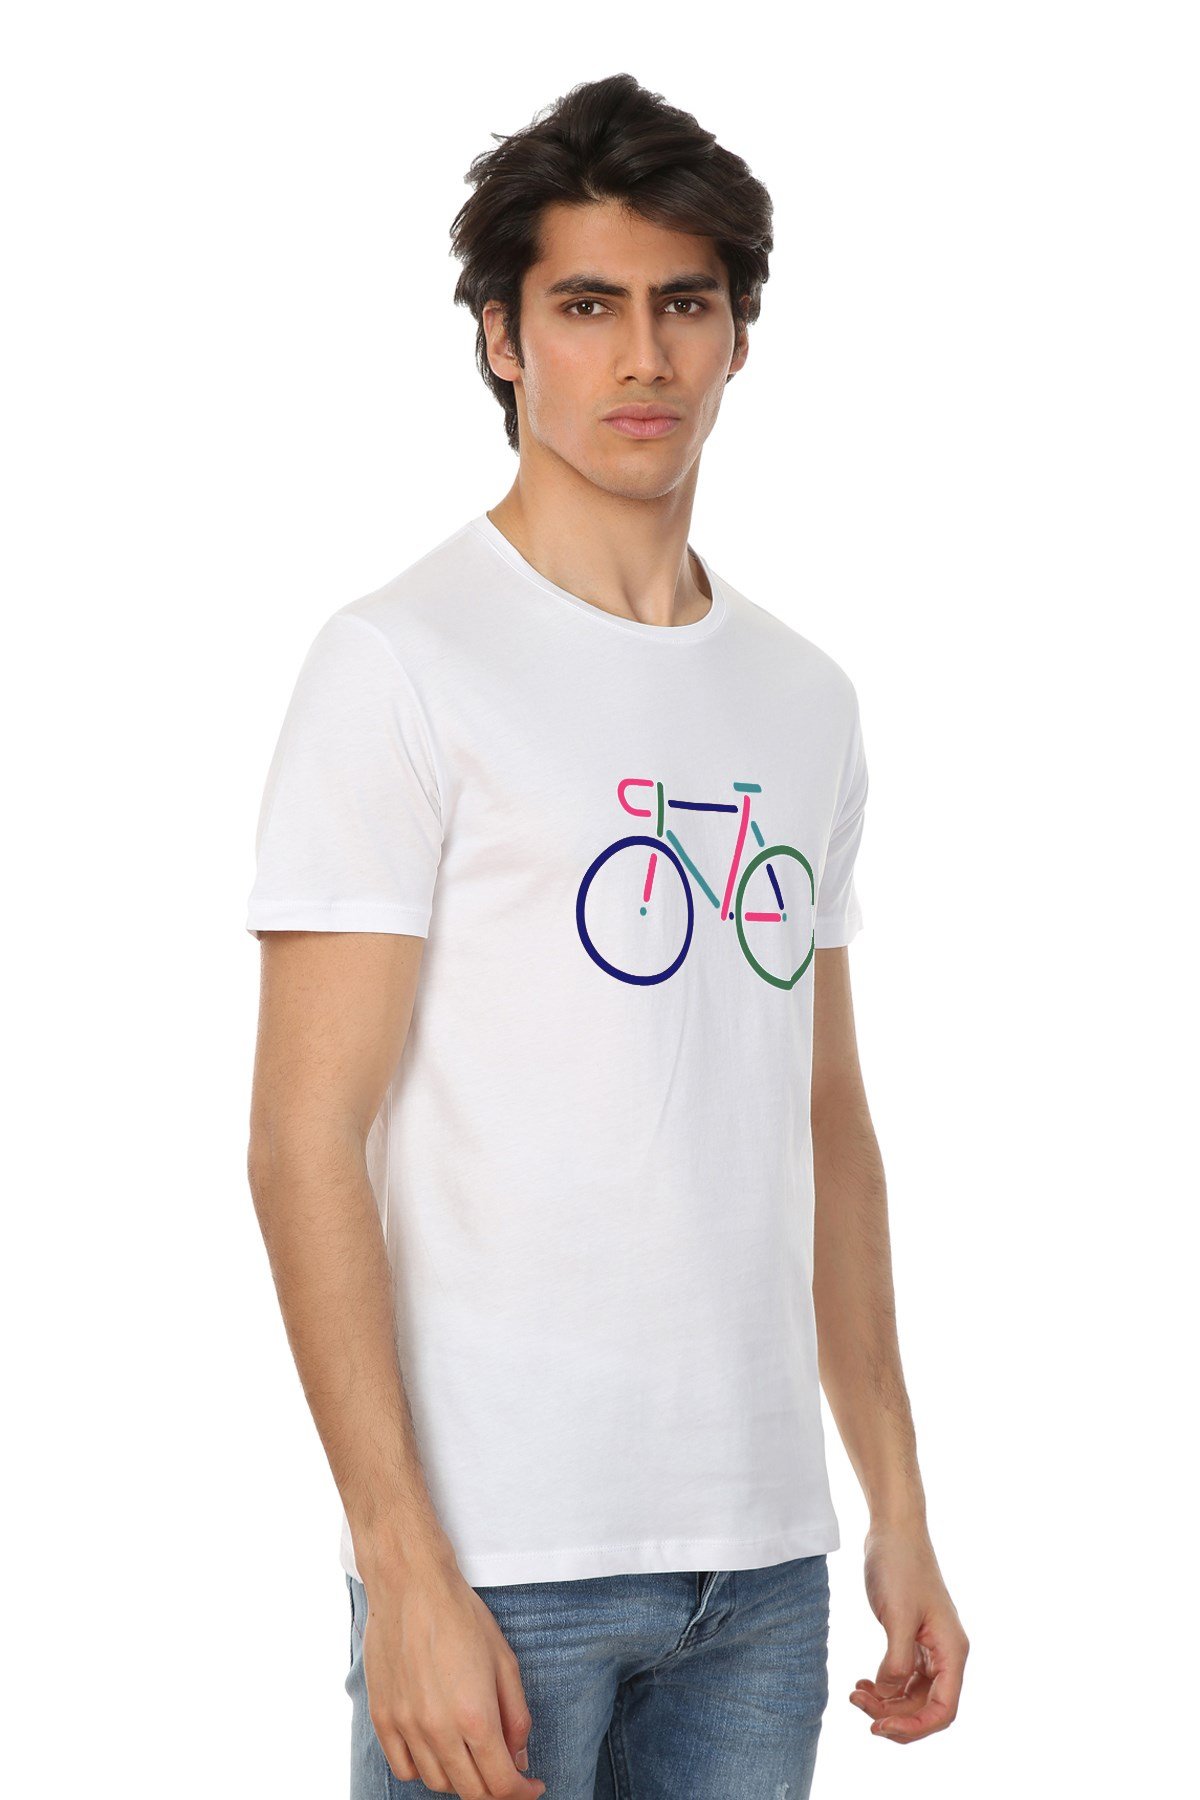 Erkek Beyaz Baskılı T-Shirt | JOHN FRANK Yeni Tişört koleksiyonu